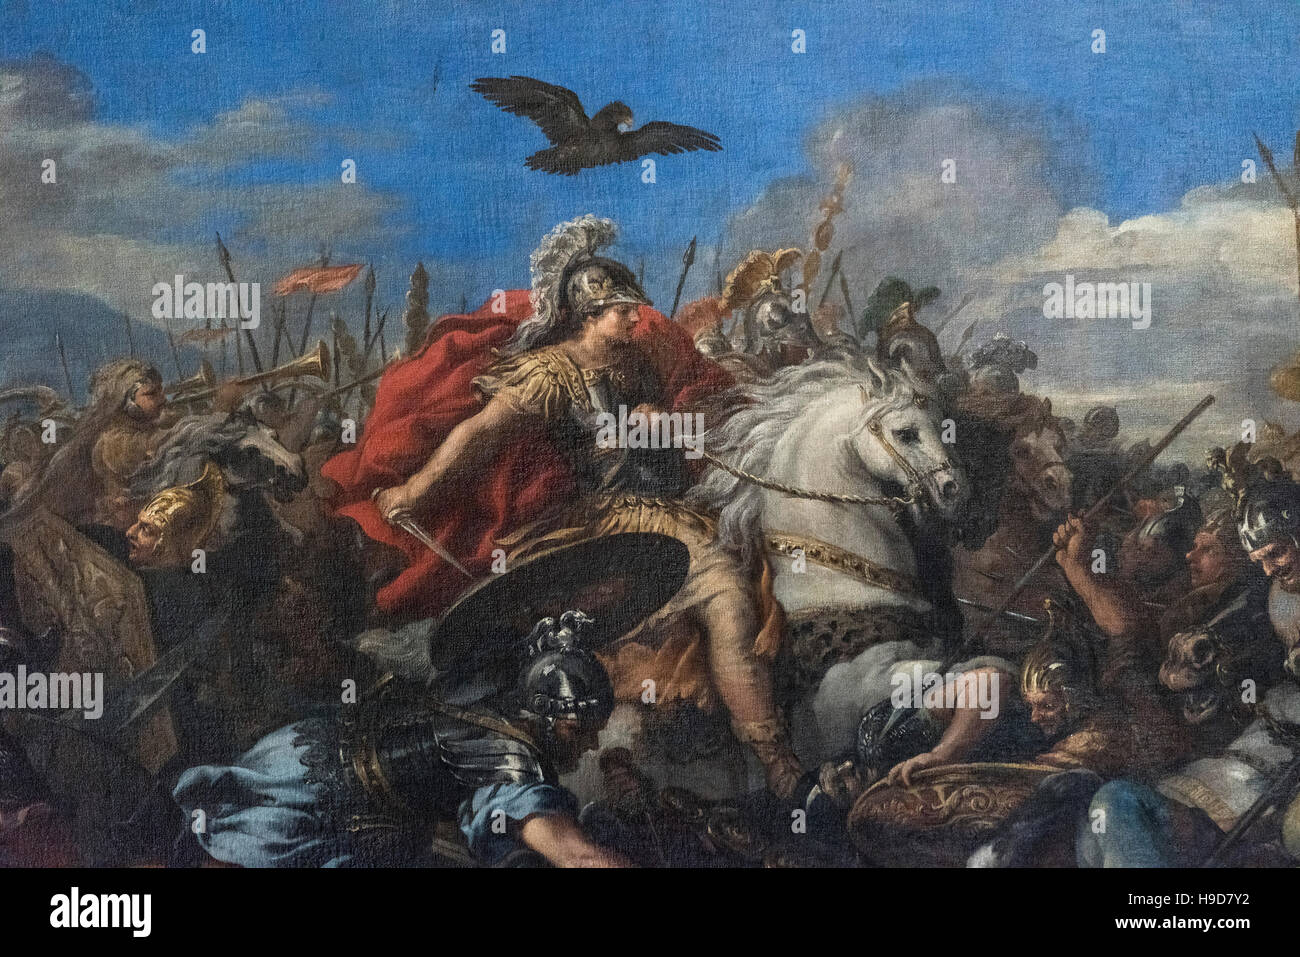 Roma. Italia. Detalle de Alejandro Magno a caballo, desde la pintura "Batalla de Alejandro y Darío' (1644-50), de Pietro da Cortona (1597-1669 Foto de stock